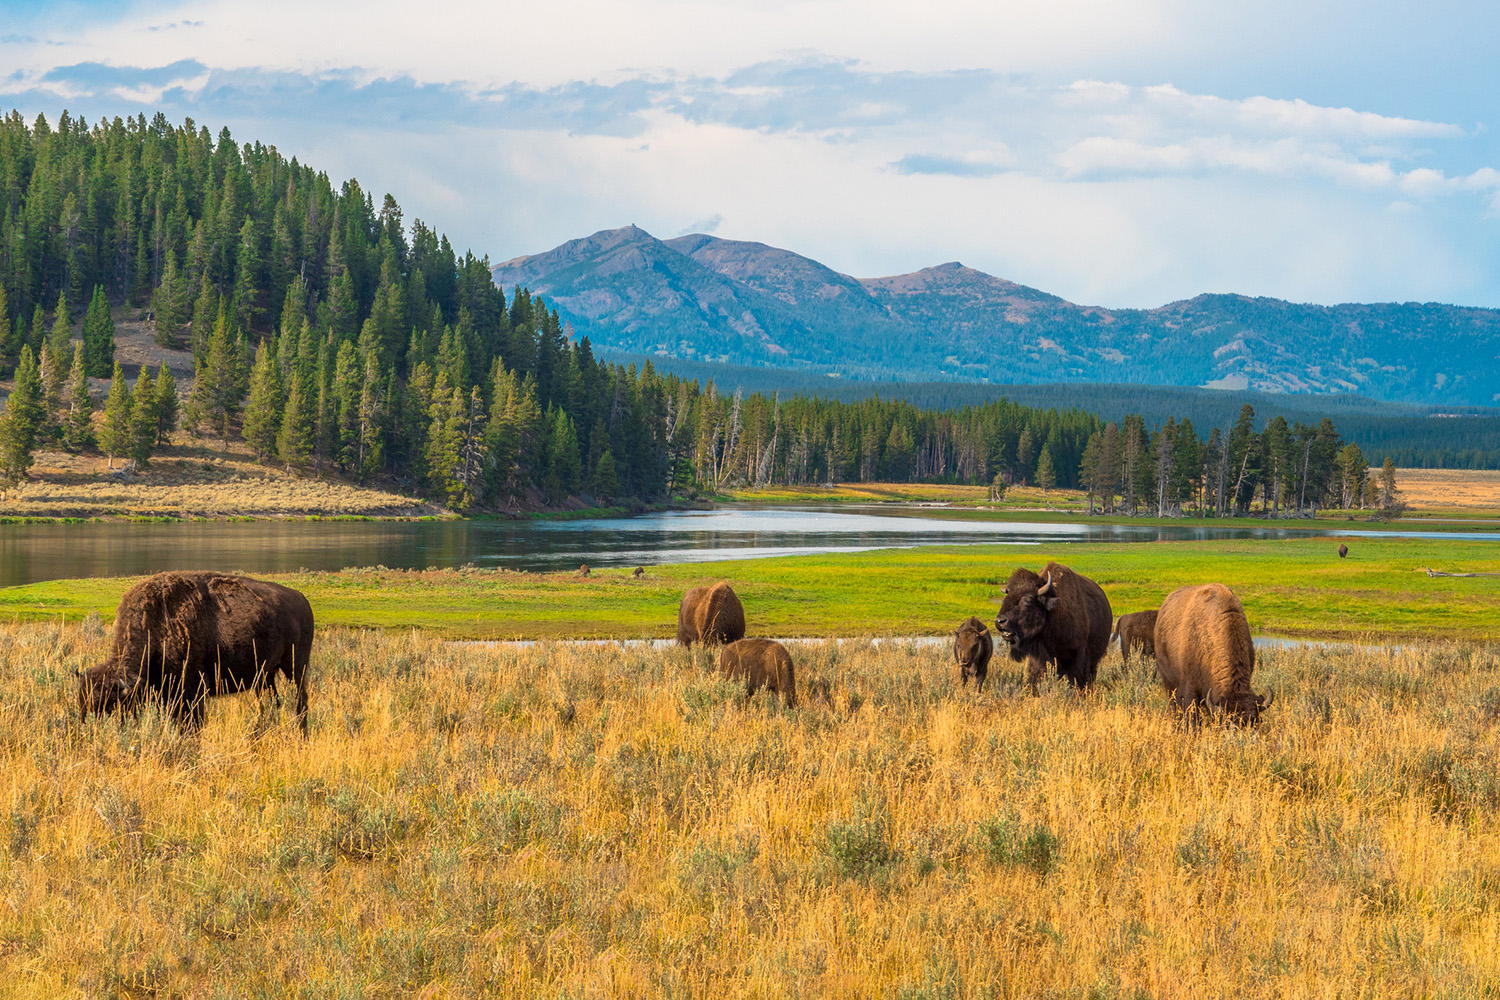 Buffalo grazing in field of tall golden grass.